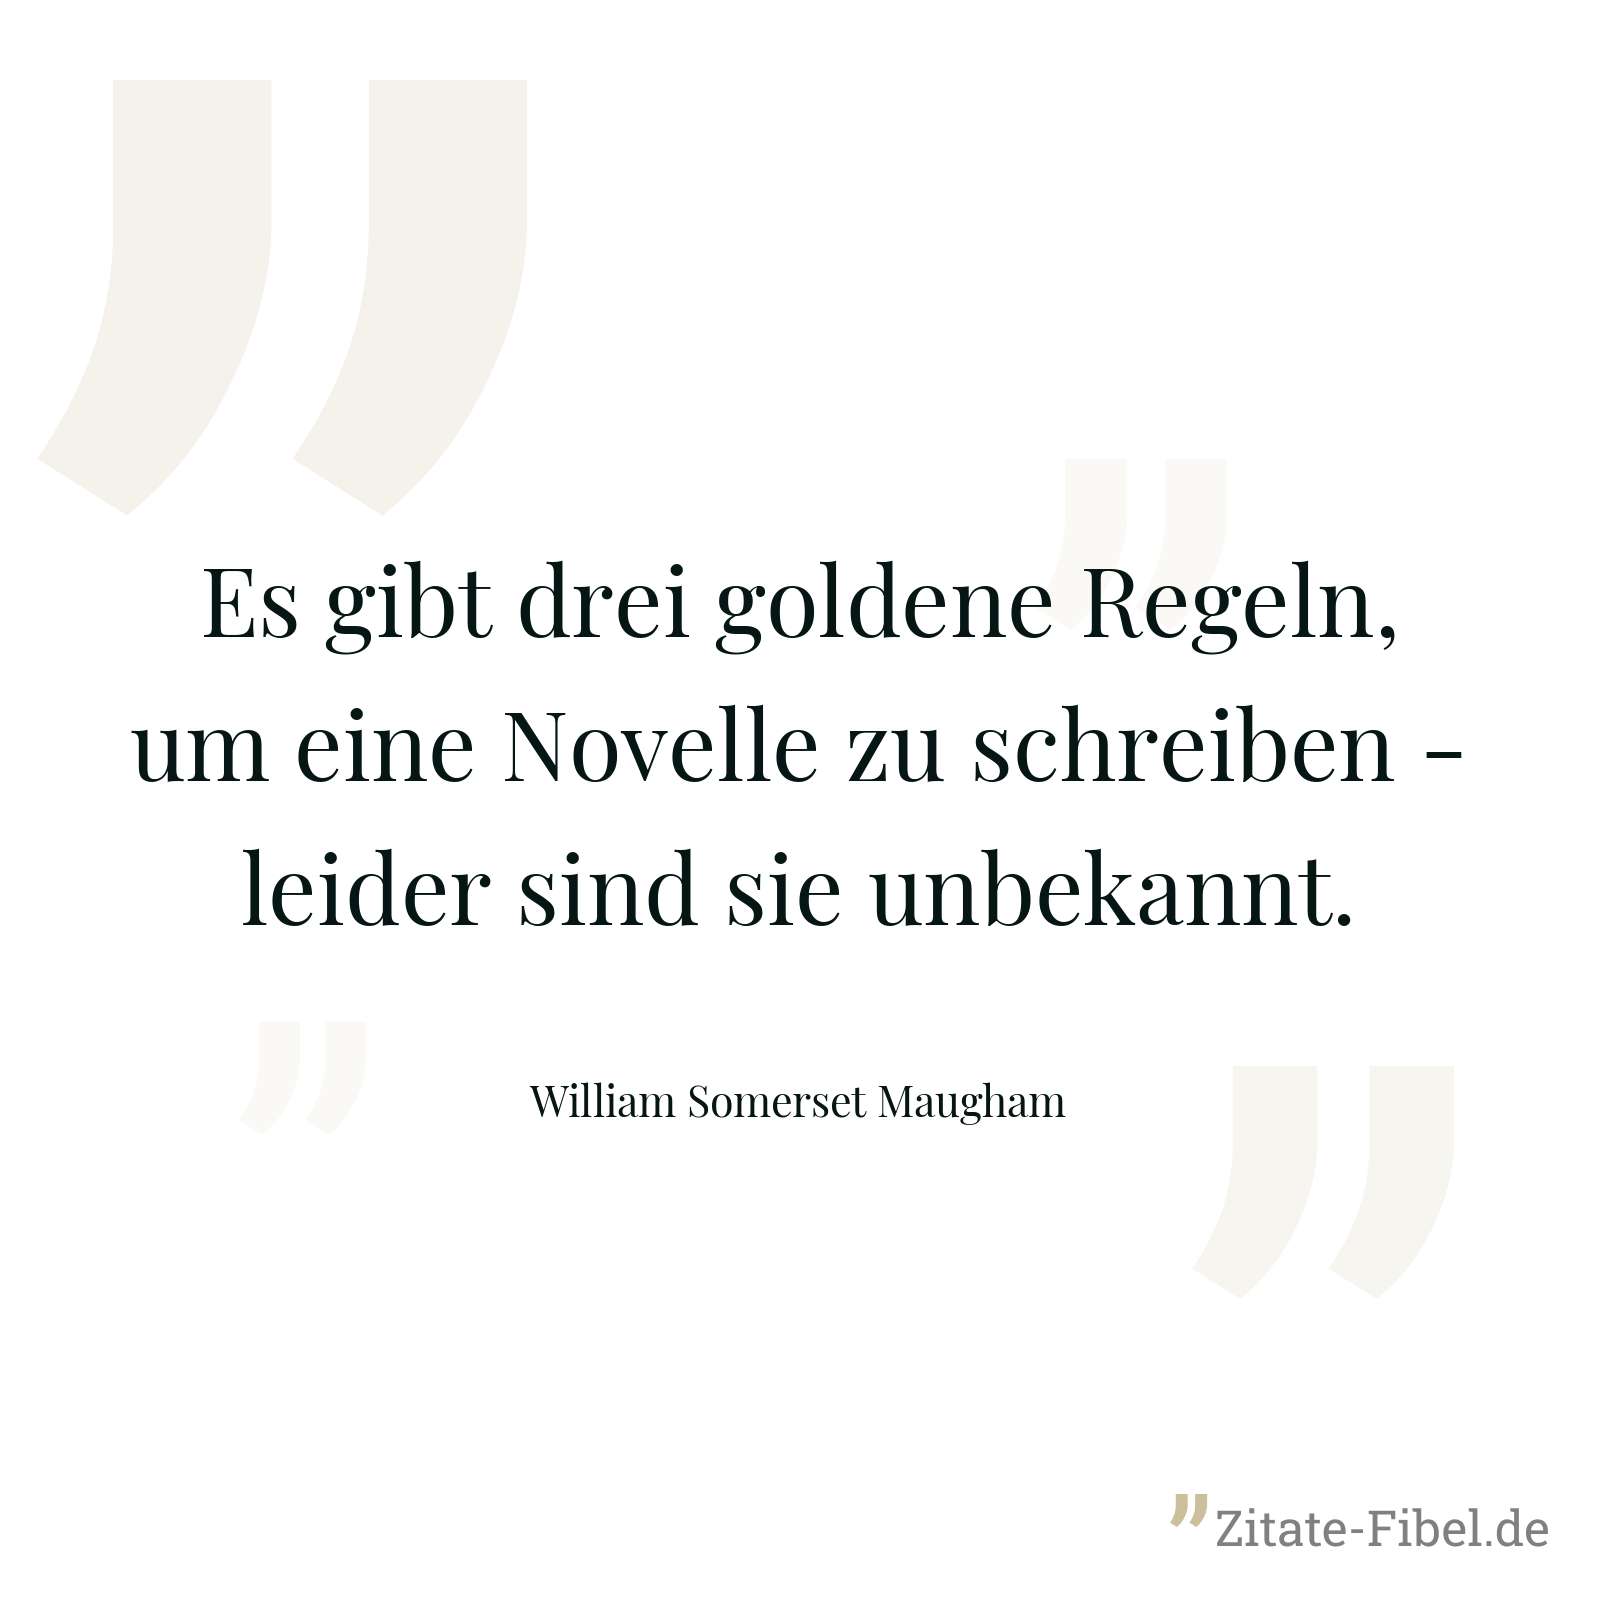 Es gibt drei goldene Regeln, um eine Novelle zu schreiben - leider sind sie unbekannt. - William Somerset Maugham